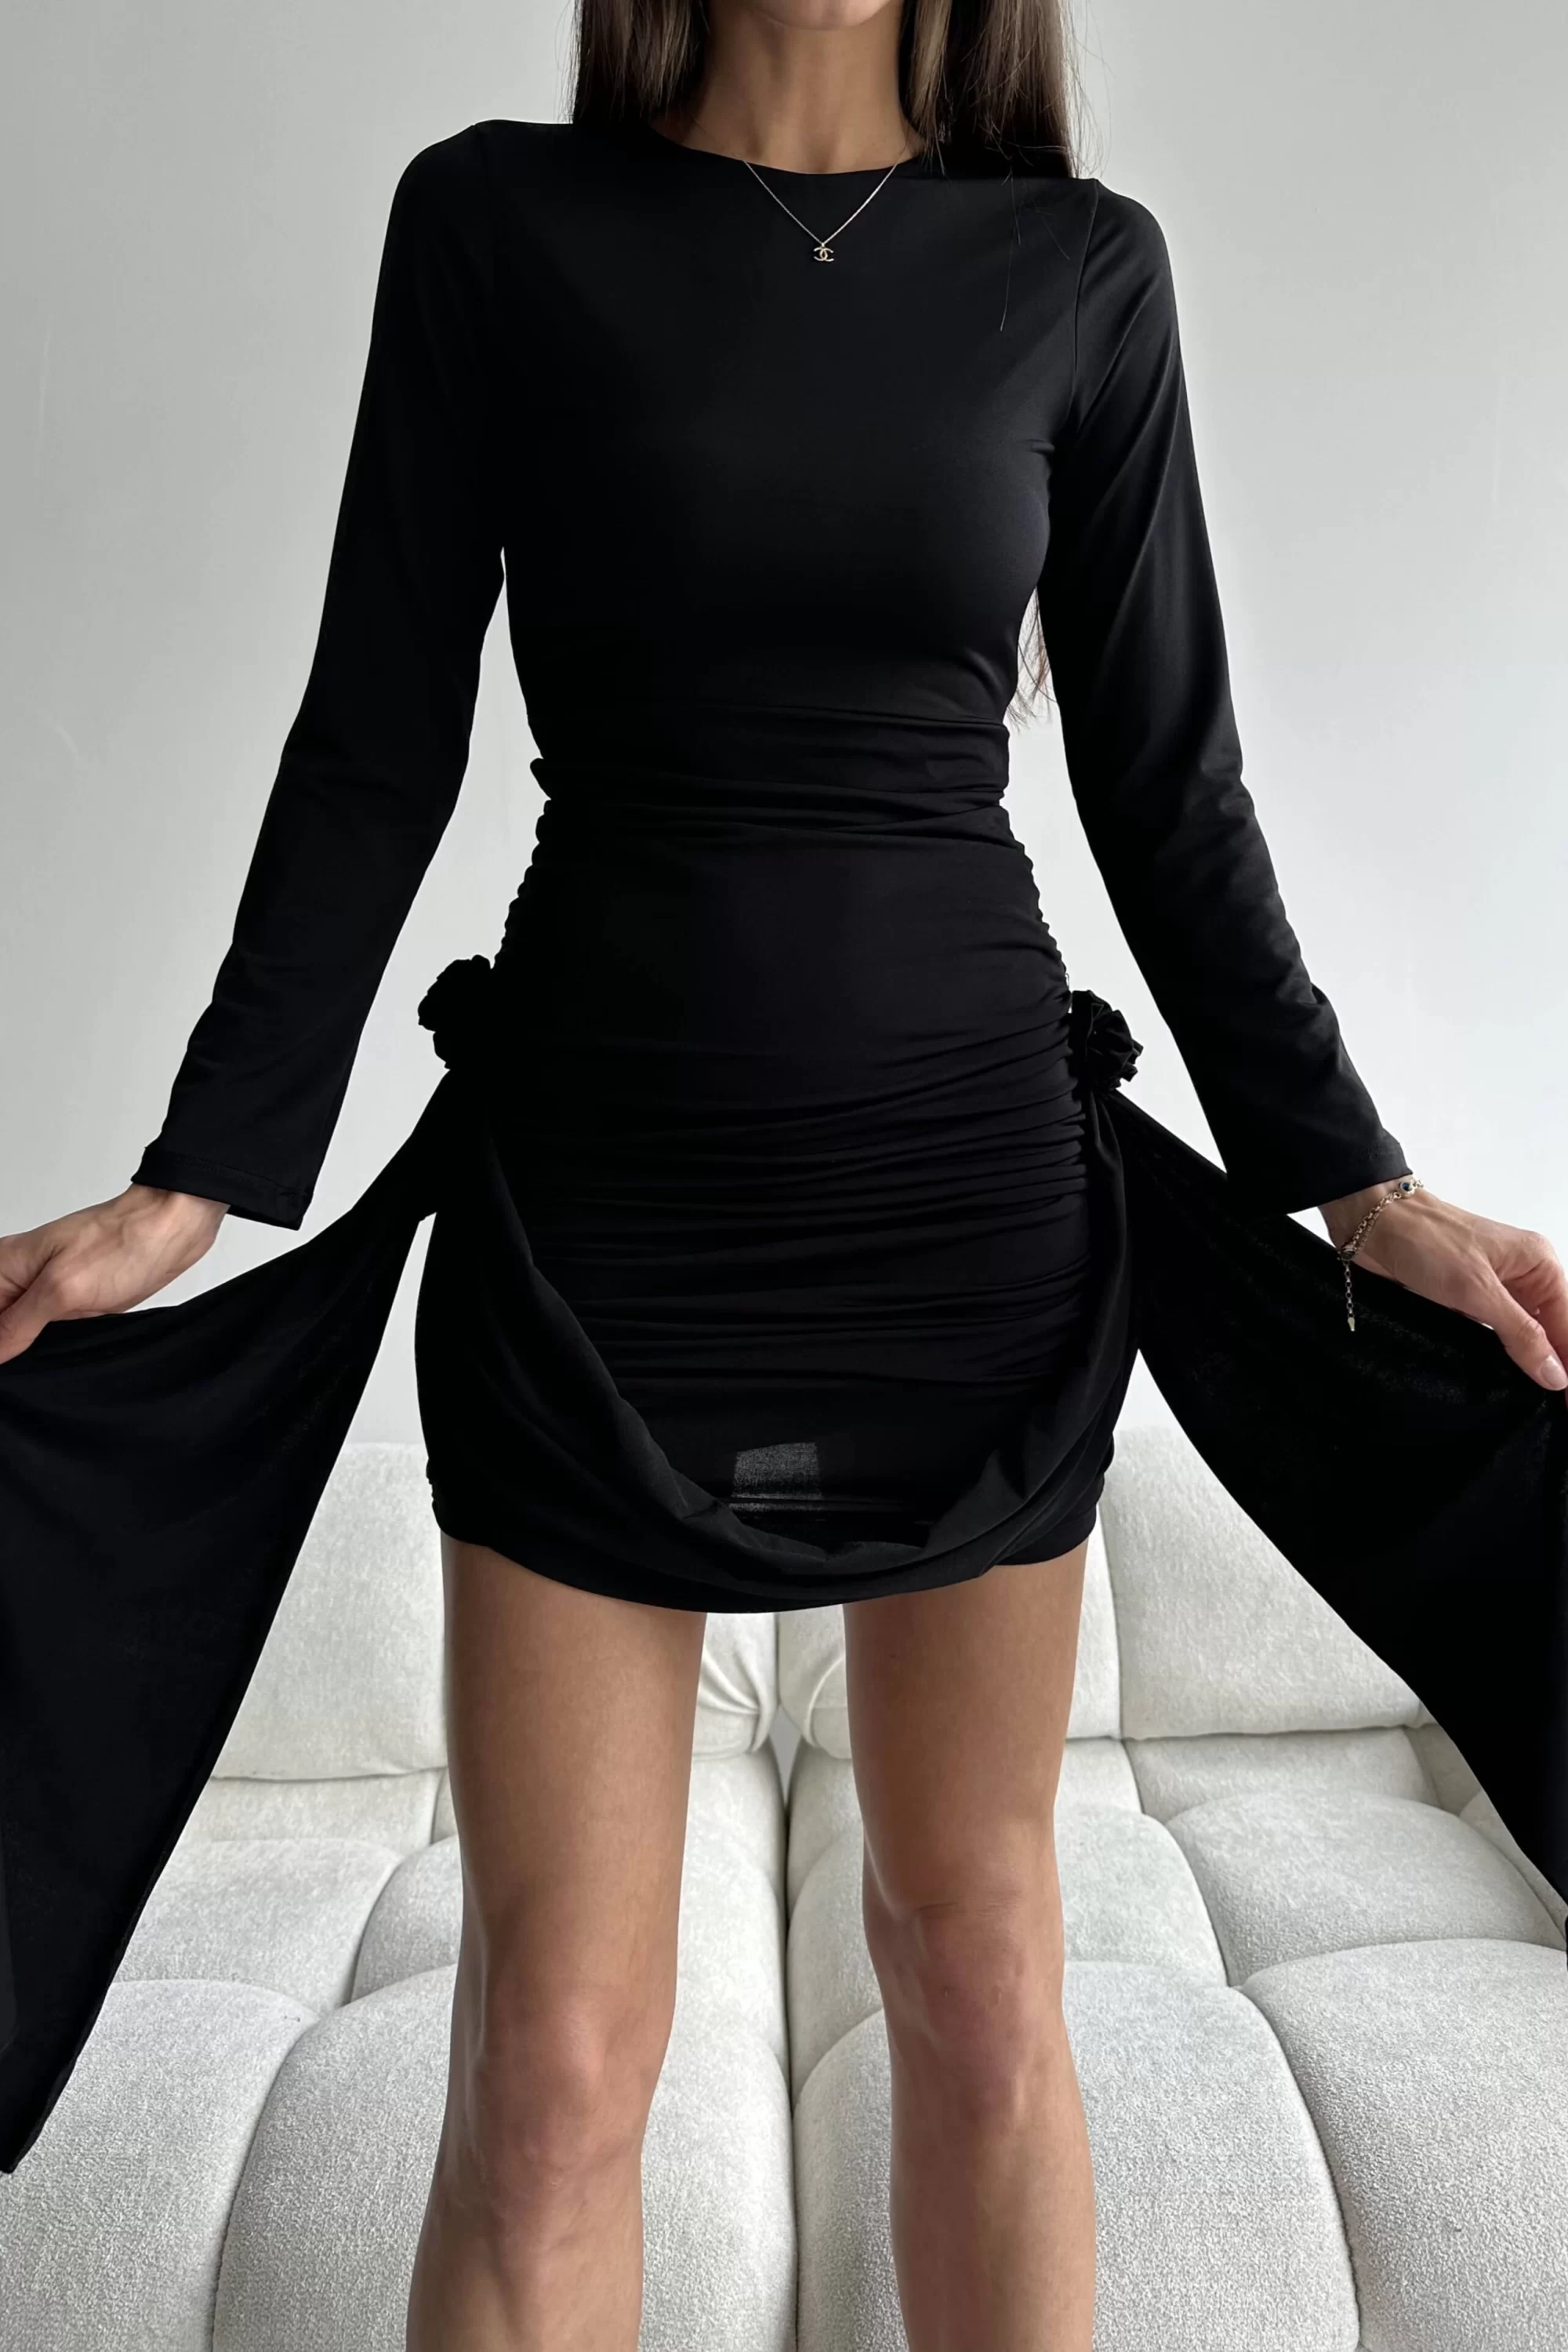 Kadın Siyah Gül Detay Büzgülü Elbise 0990-2867